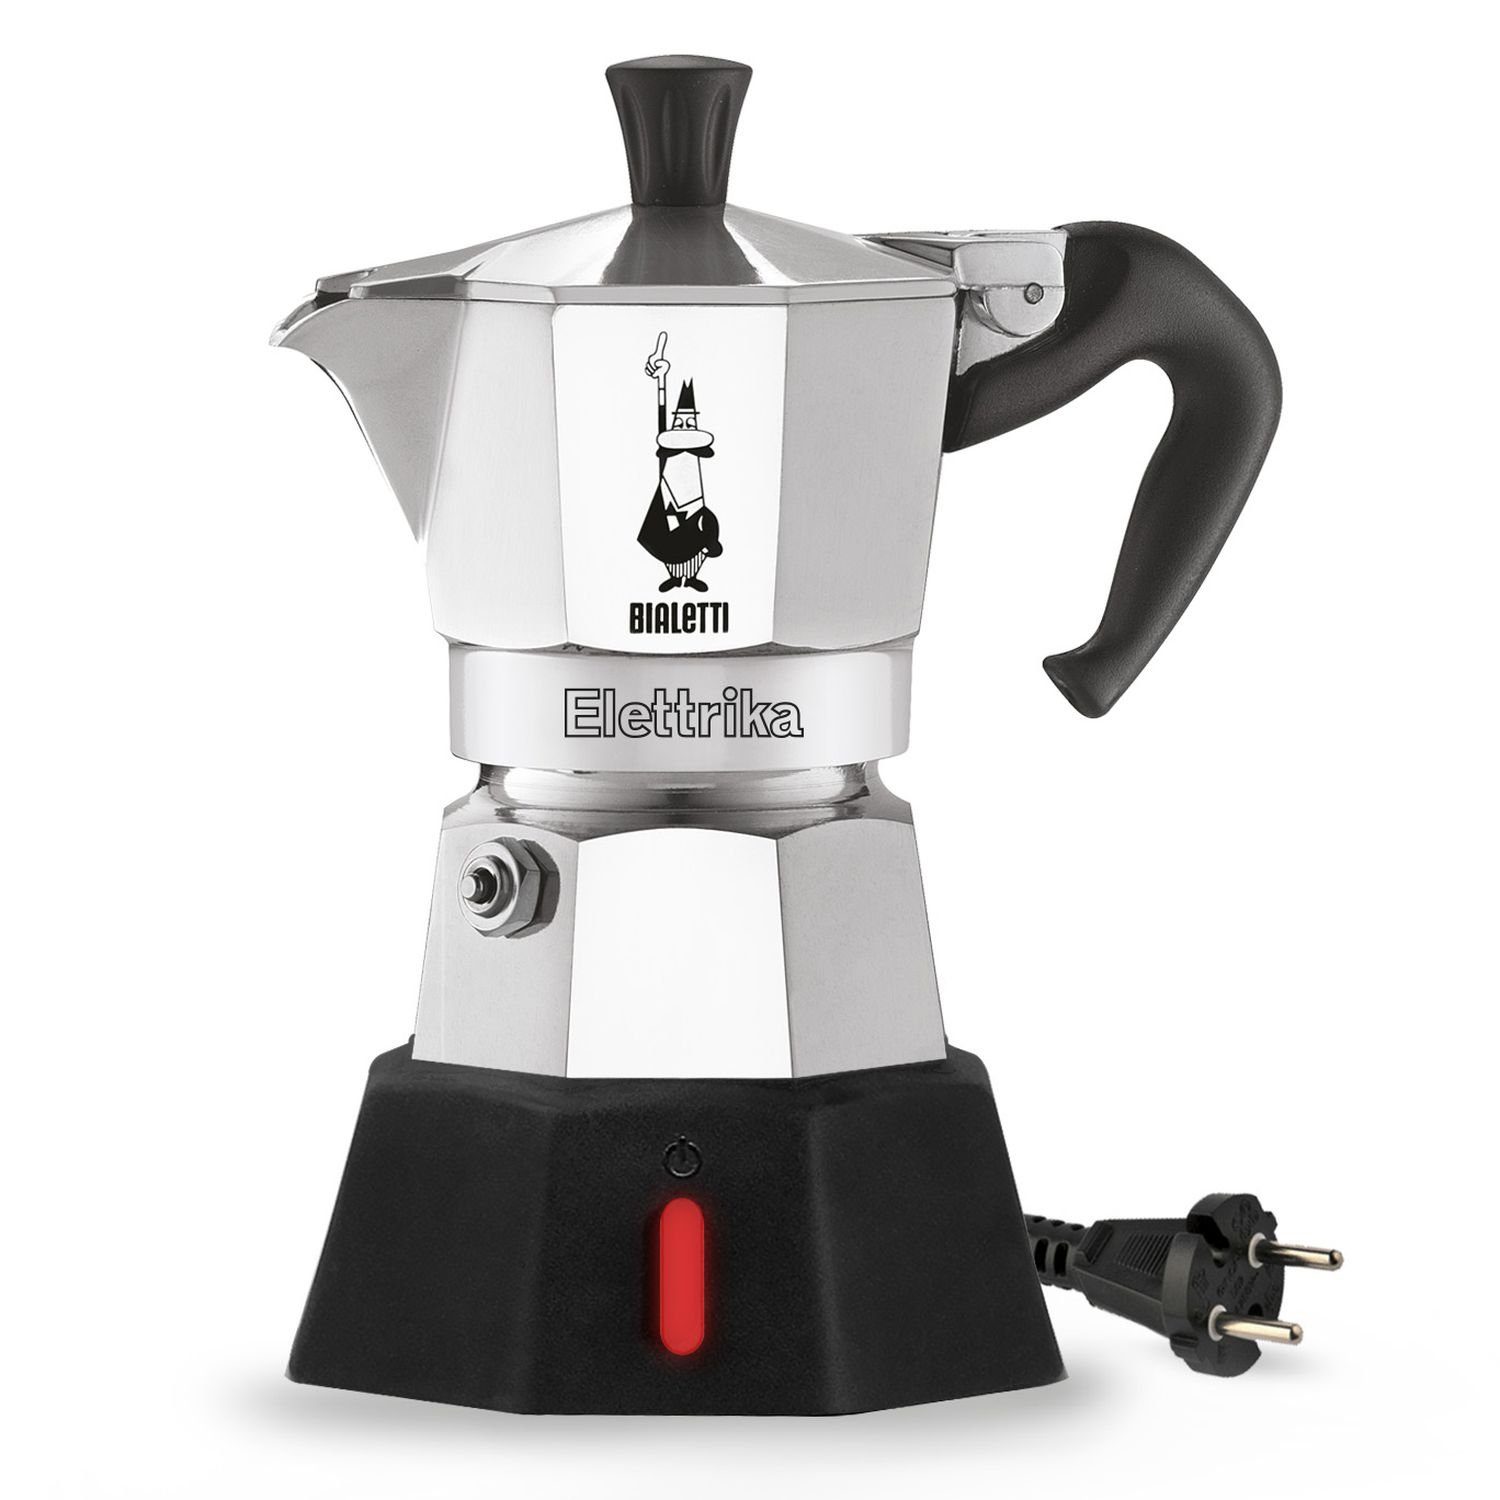 BIALETTI Espressokocher New Moka Elettrika 2 Tassen, 0,09l Kaffeekanne